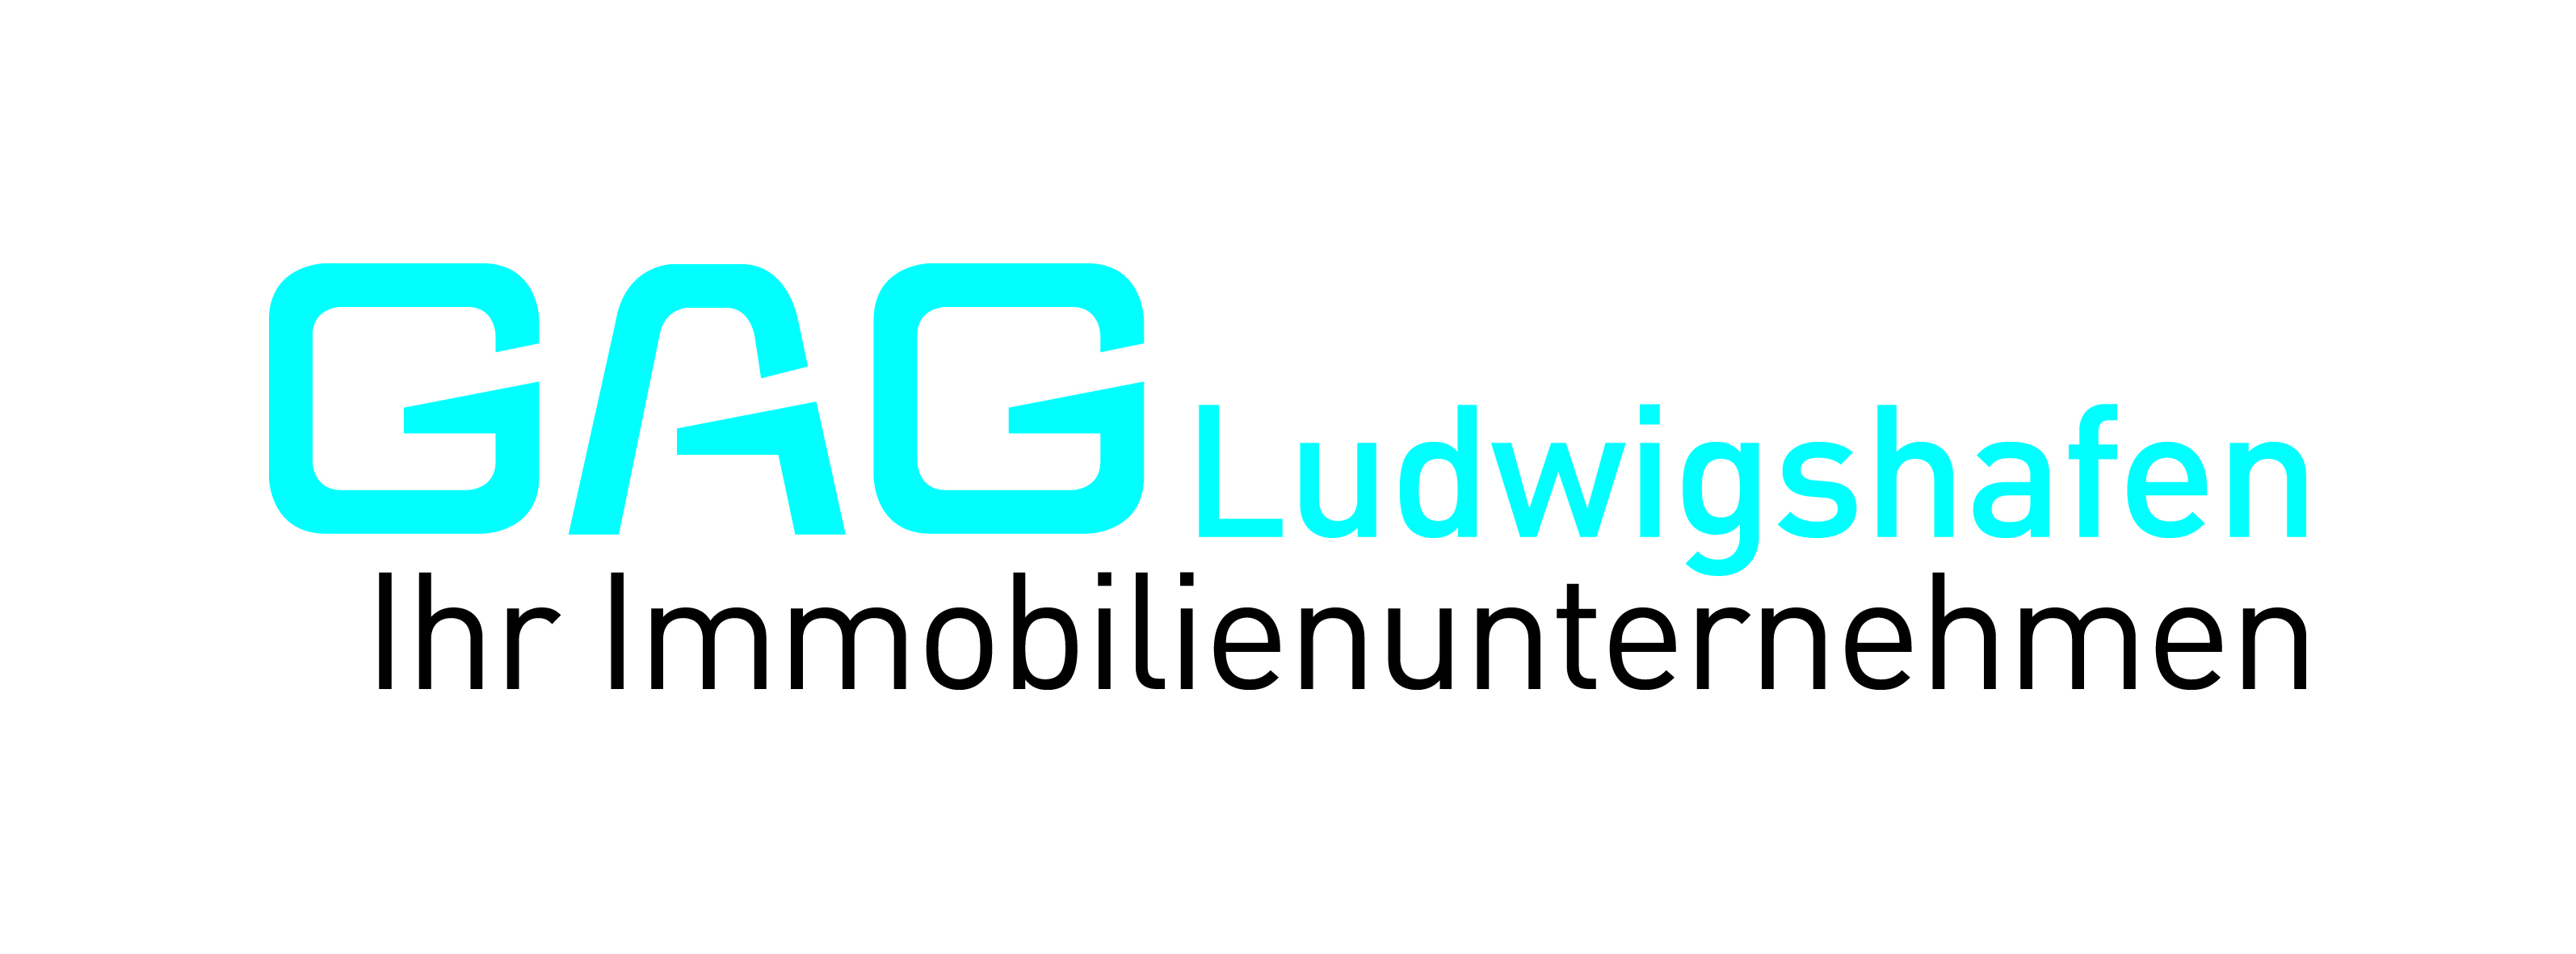 GAG Ludwigshafen am Rhein AG